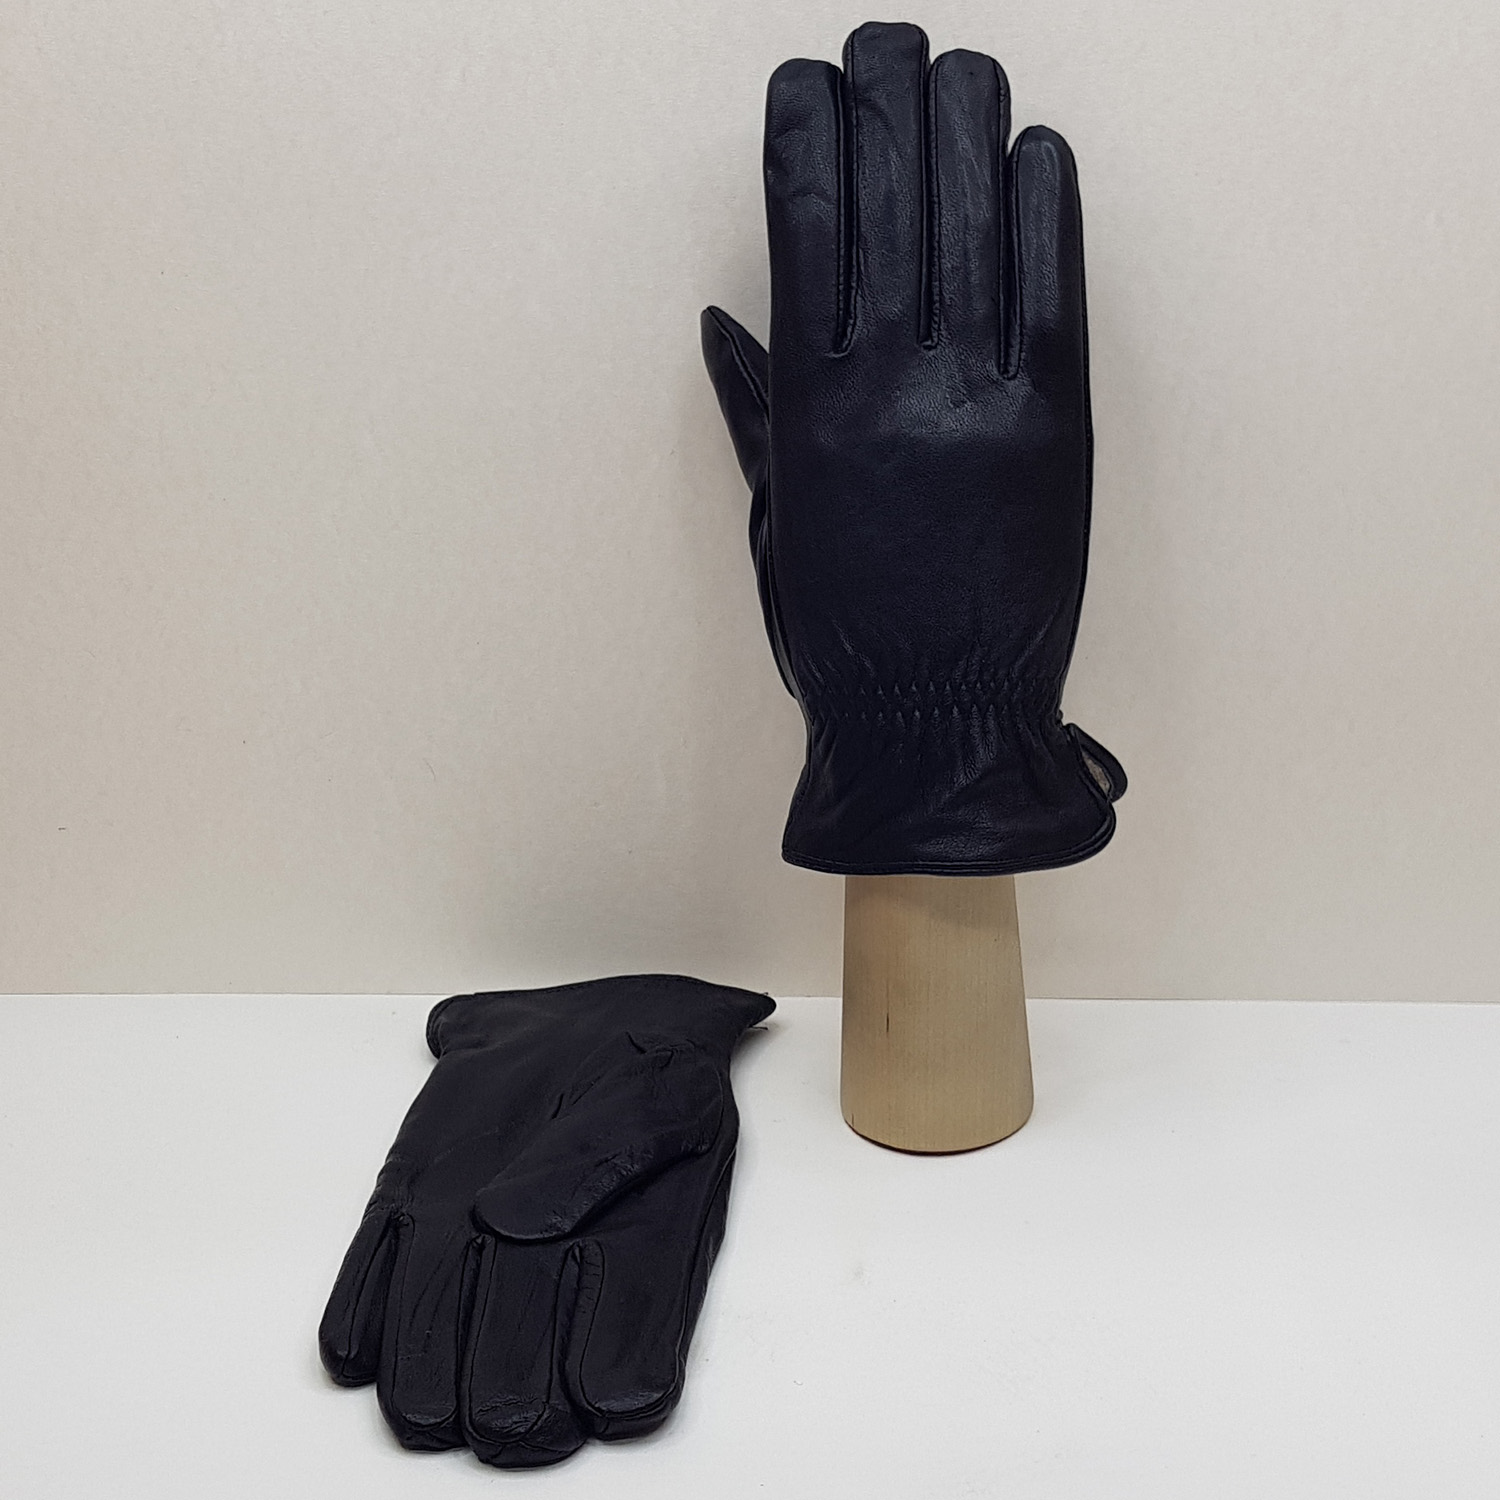 Мужские перчатки кожаные с шерстяной подкладкой подростковые №1 (Упаковка 5 шт.)